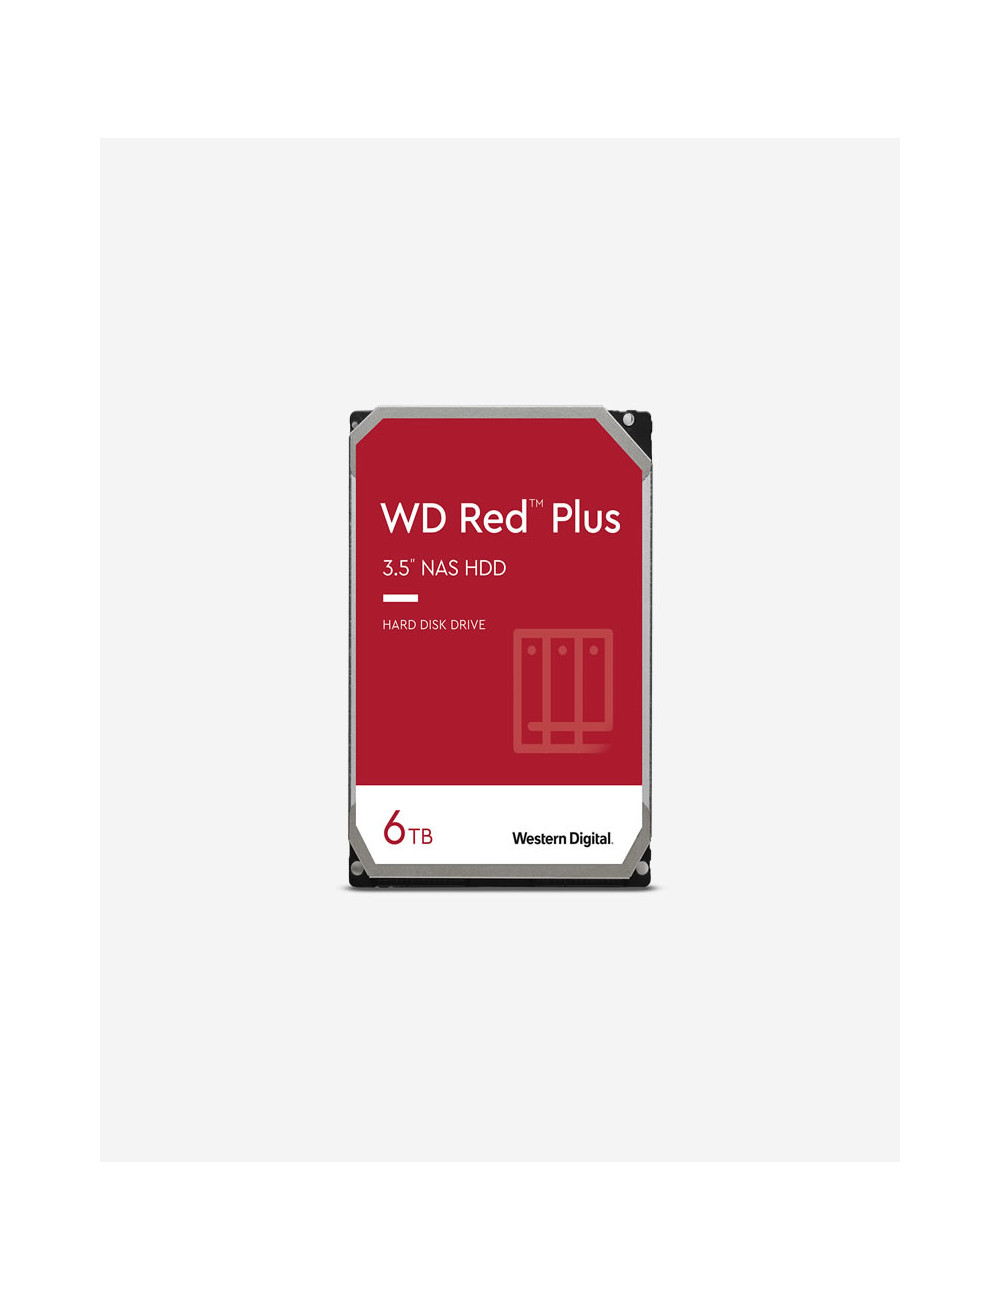 WD RED PLUS 6TB Unidad de disco duro de 3,5"